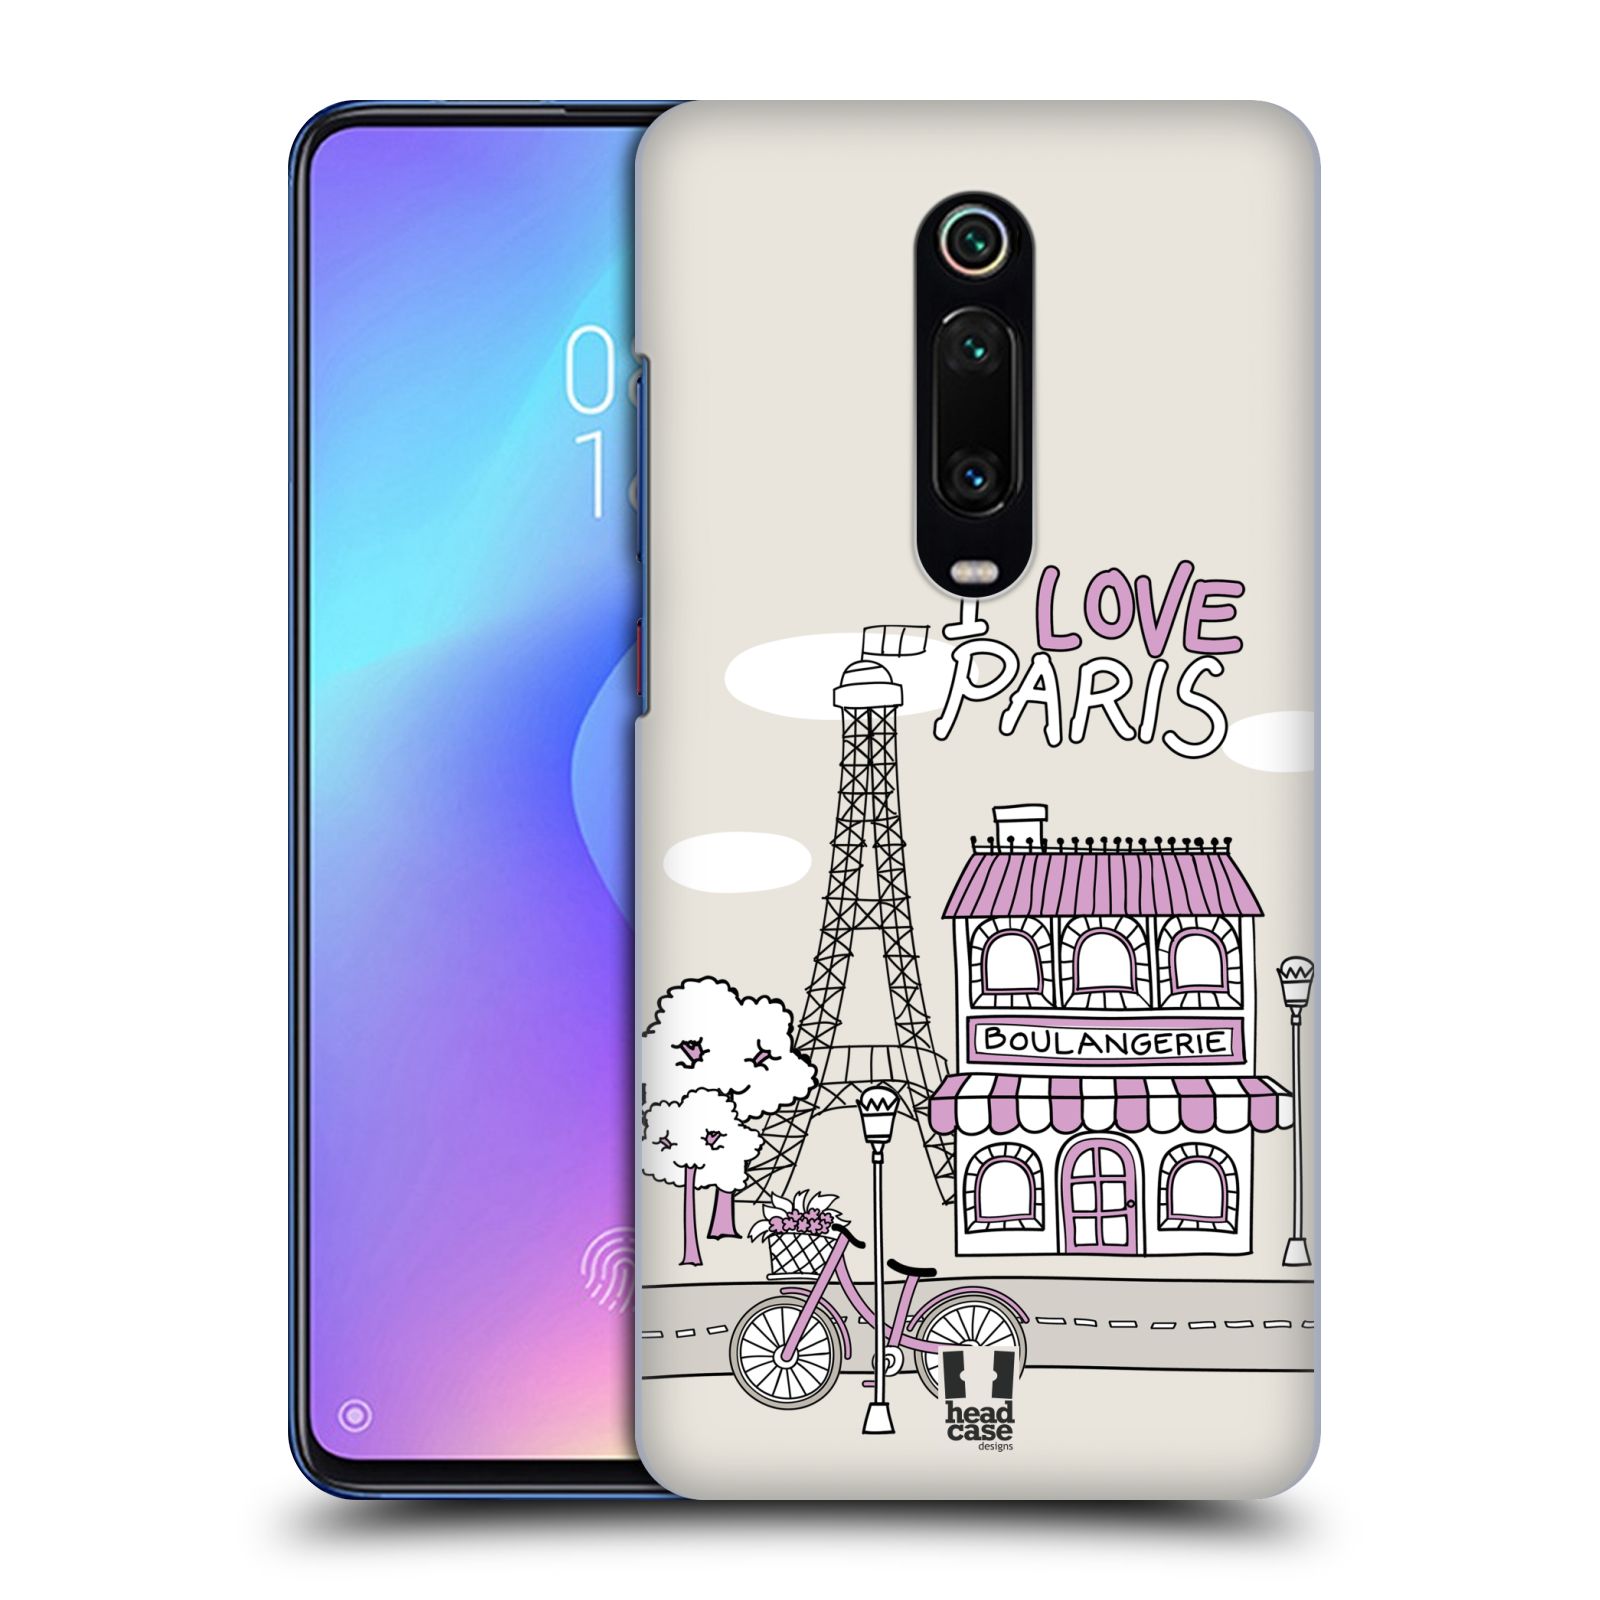 Pouzdro na mobil Xiaomi Mi 9T PRO - HEAD CASE - vzor Kreslená městečka FIALOVÁ, Paříž, Francie, I LOVE PARIS